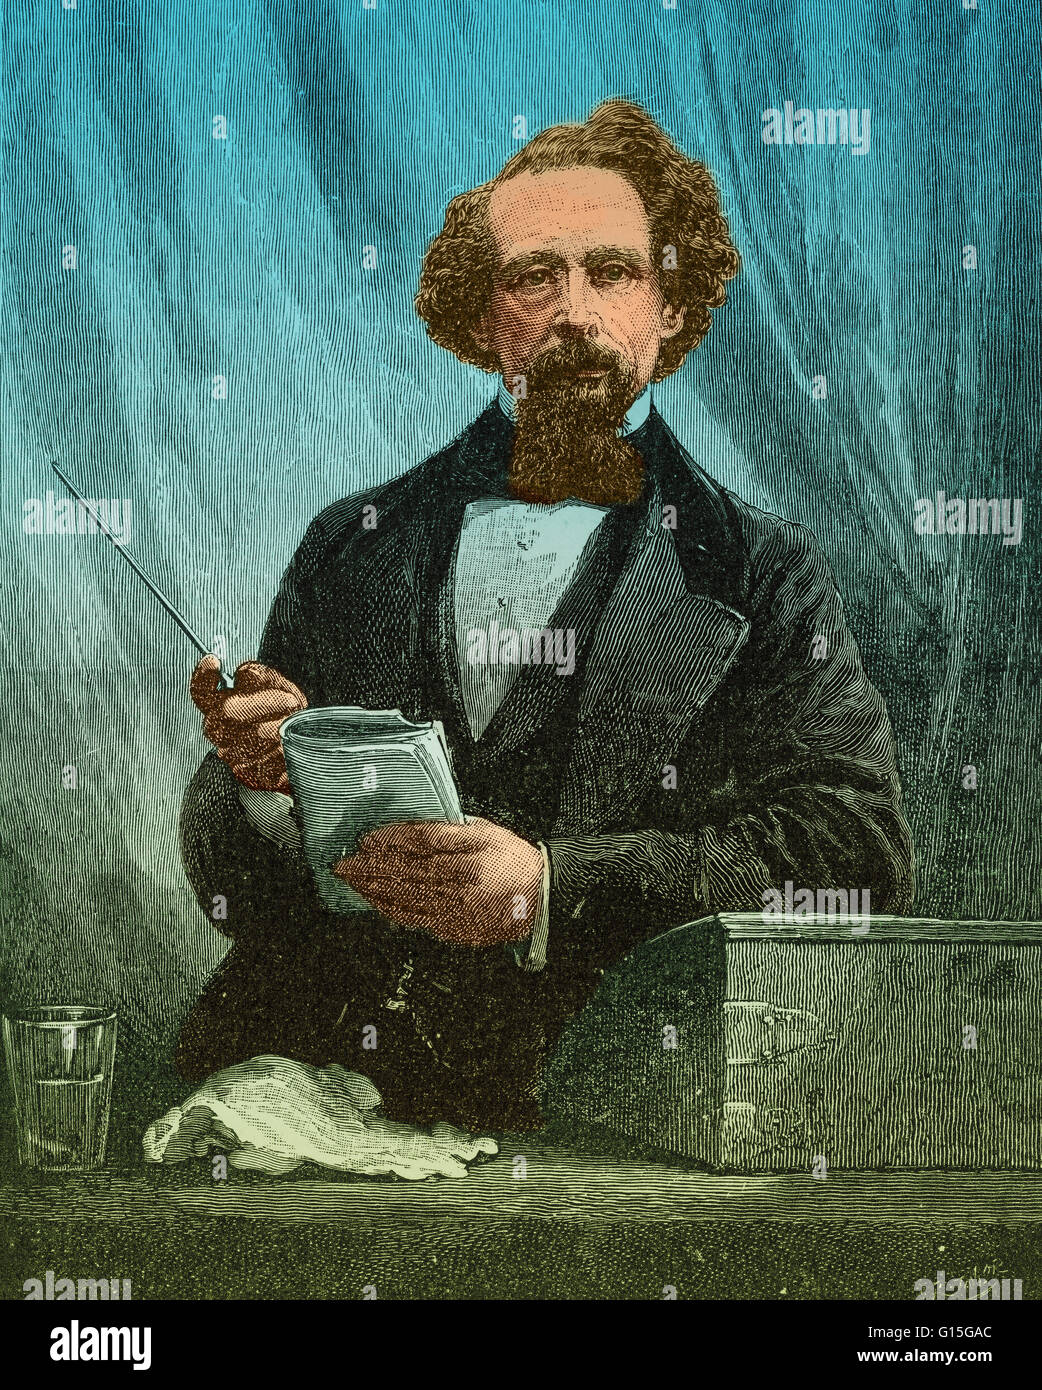 Charles John Huffam Dickens (7. Februar 1812 - 9. Juni 1870) war ein englischer Schriftsteller und Gesellschaftskritiker. Er schuf einige der denkwürdigsten fiktive Charaktere der Welt und gilt als der größte Schriftsteller der viktorianischen Zeit. Während Hallo Stockfoto